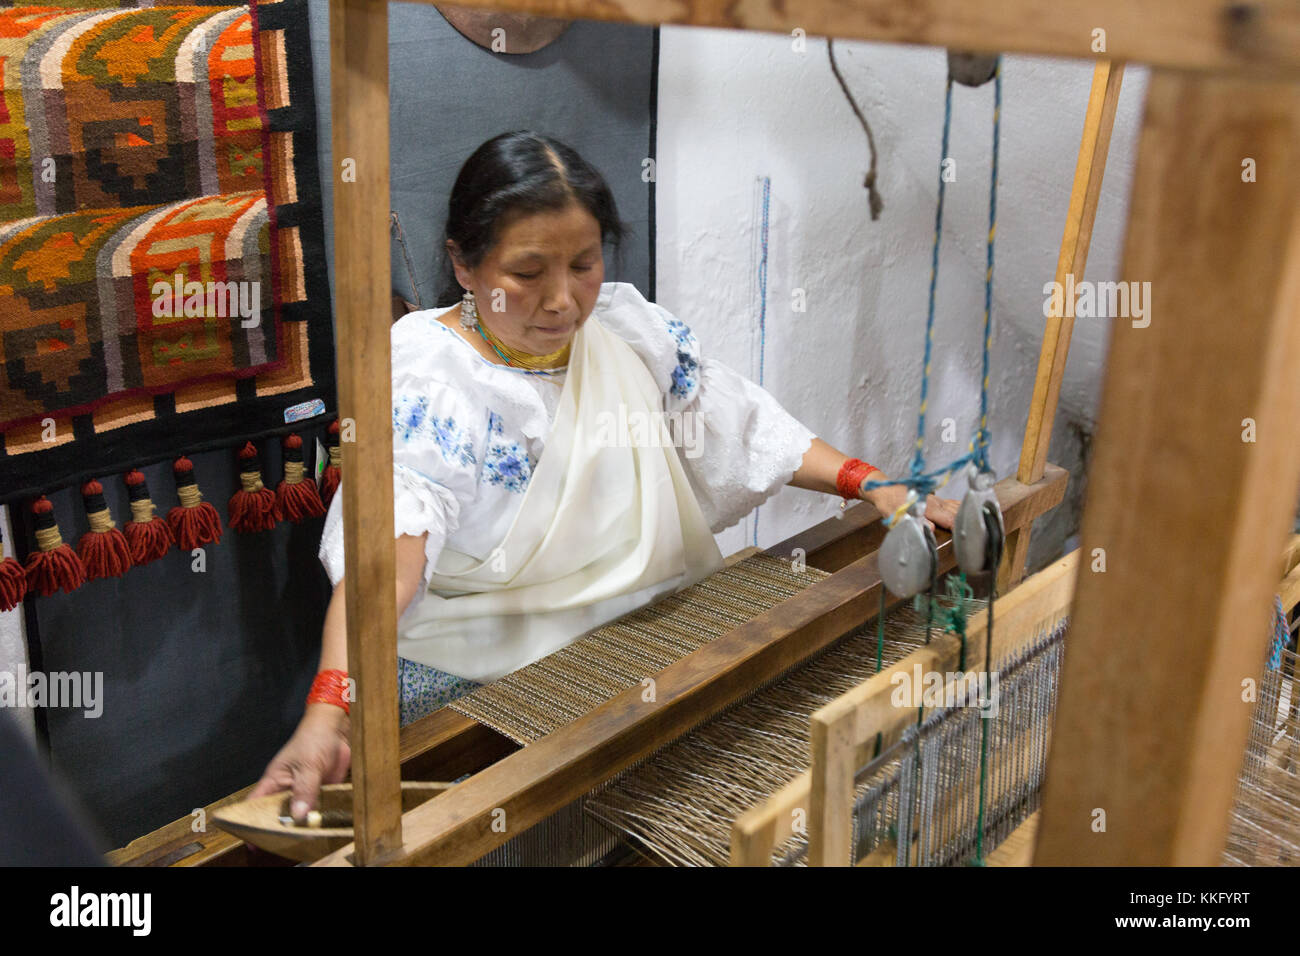 Culture équatorienne - une femme équatorienne mature utilisant un métier à tisser traditionnel pour fabriquer des textiles, Otavalo, Equateur, Amérique du Sud Banque D'Images